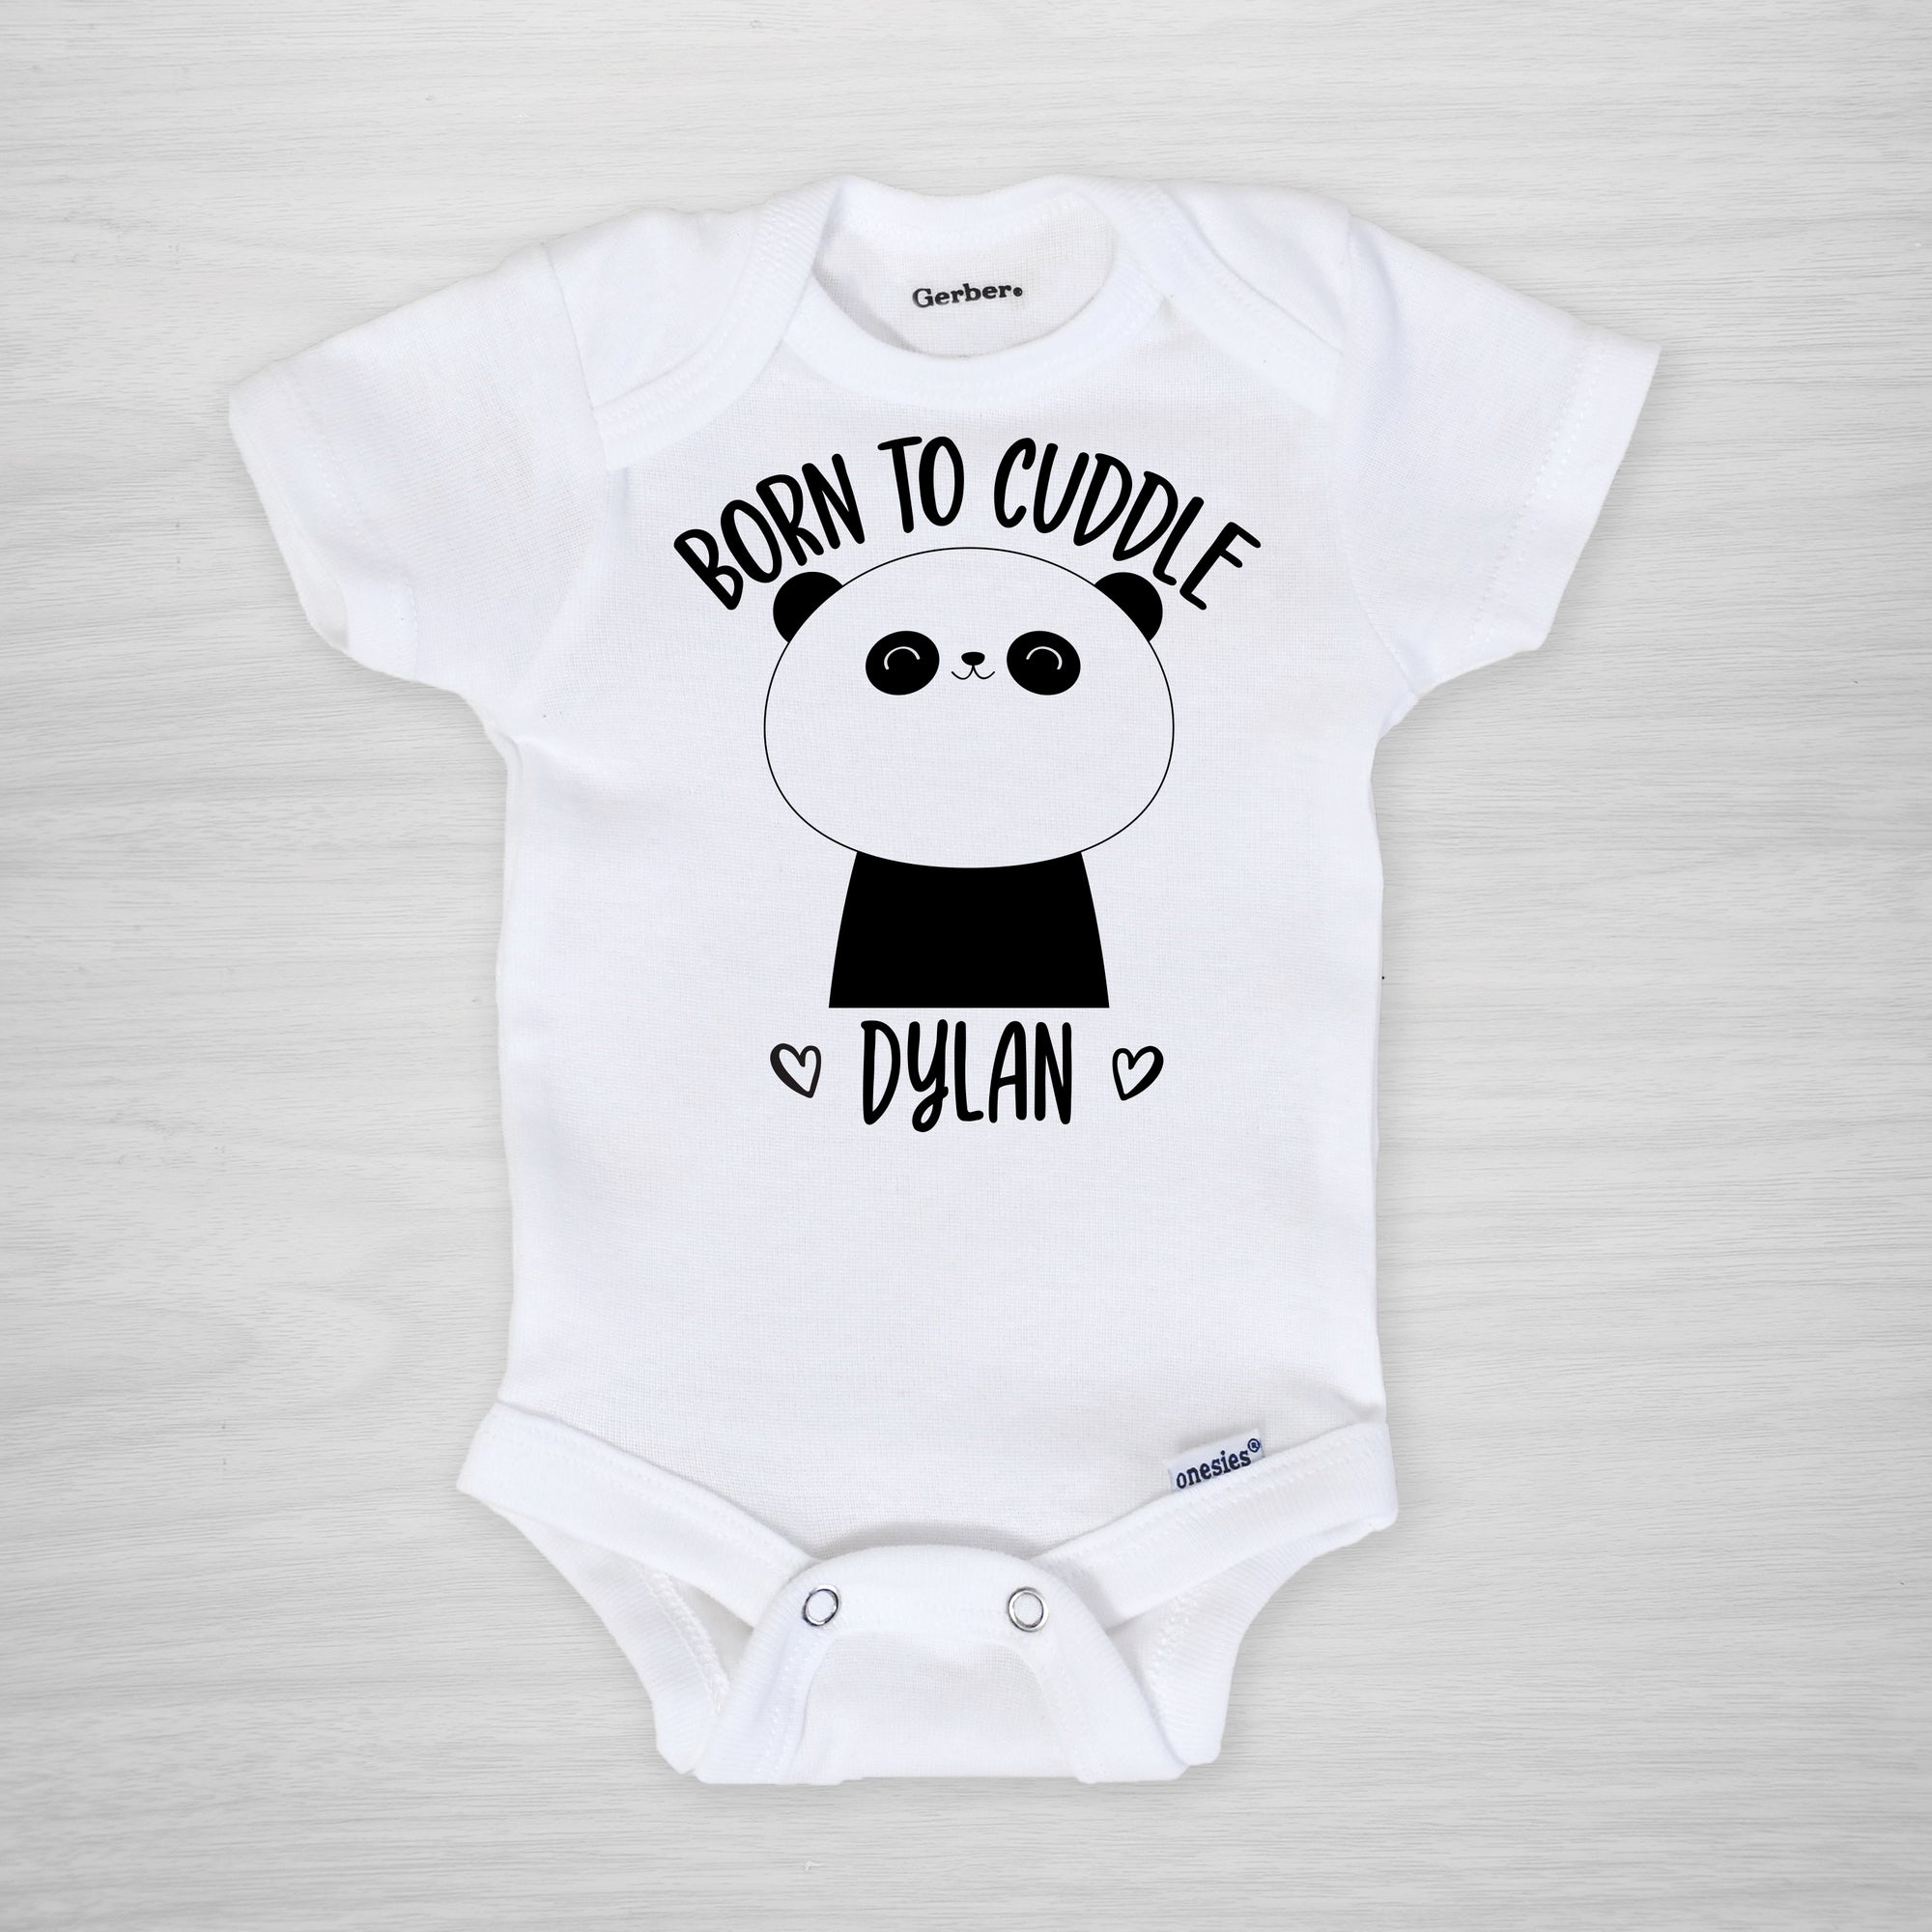 Panda Gerber Onesie "Born to Cuddle" long sleeved